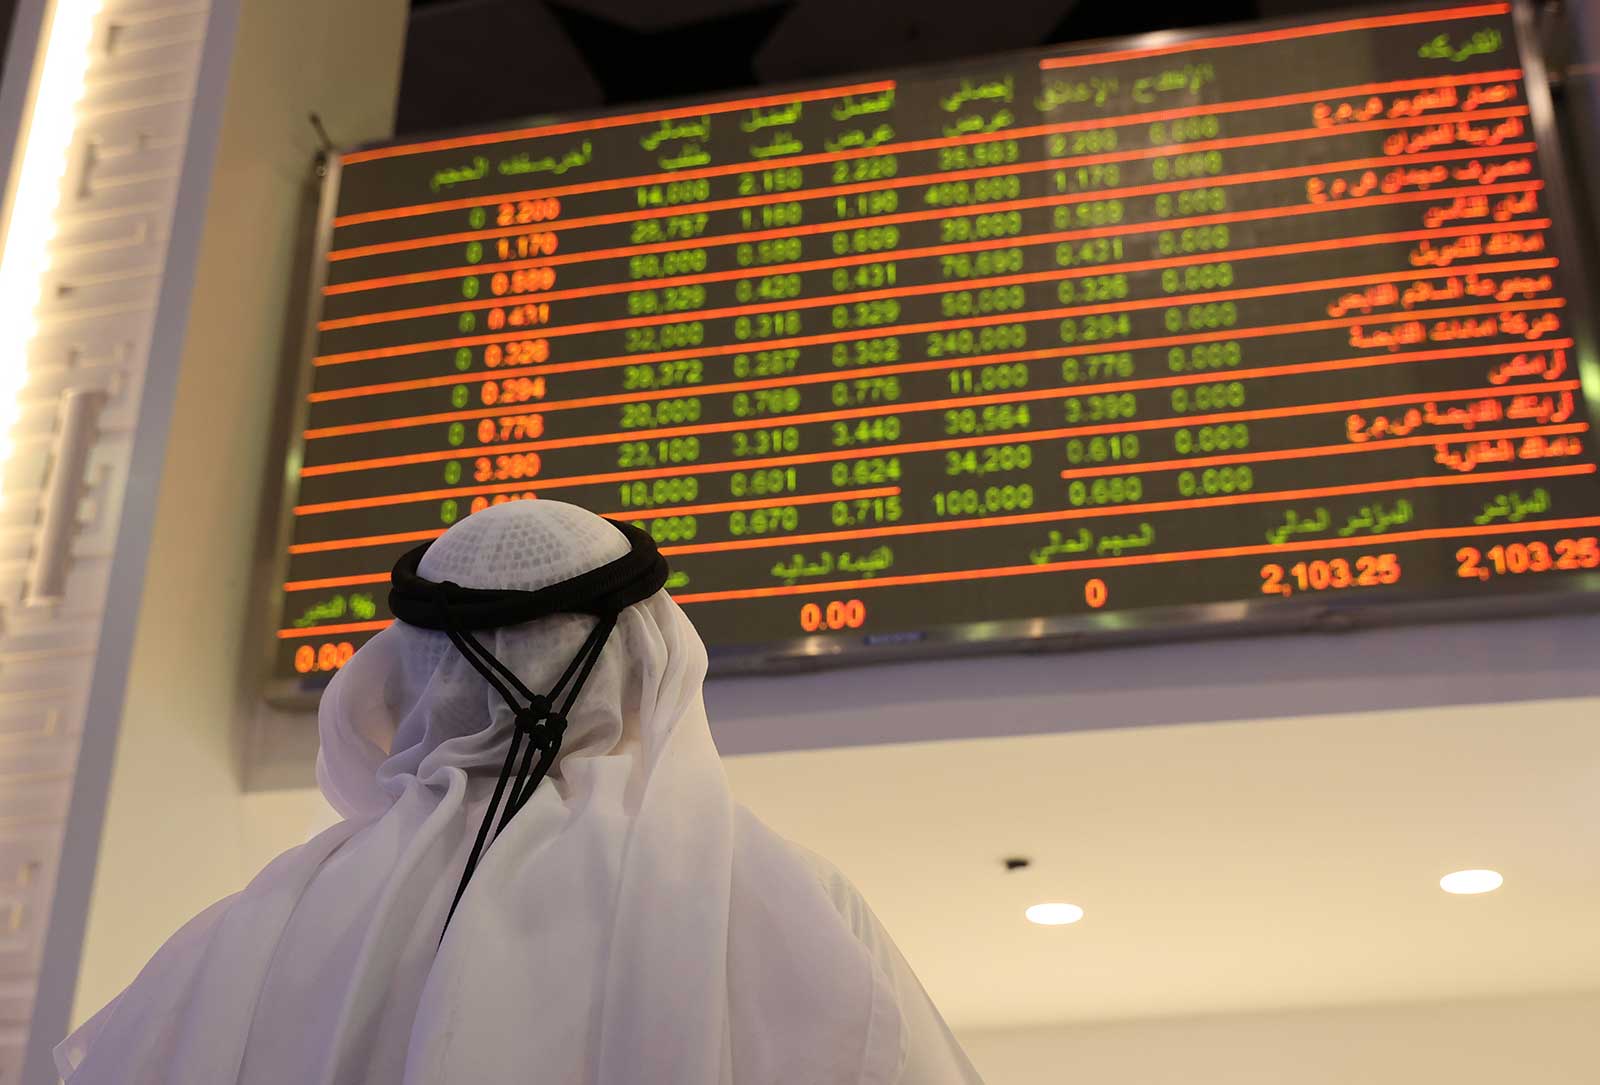 سوق دبي عند أعلى مستوياته في 3 أشهر